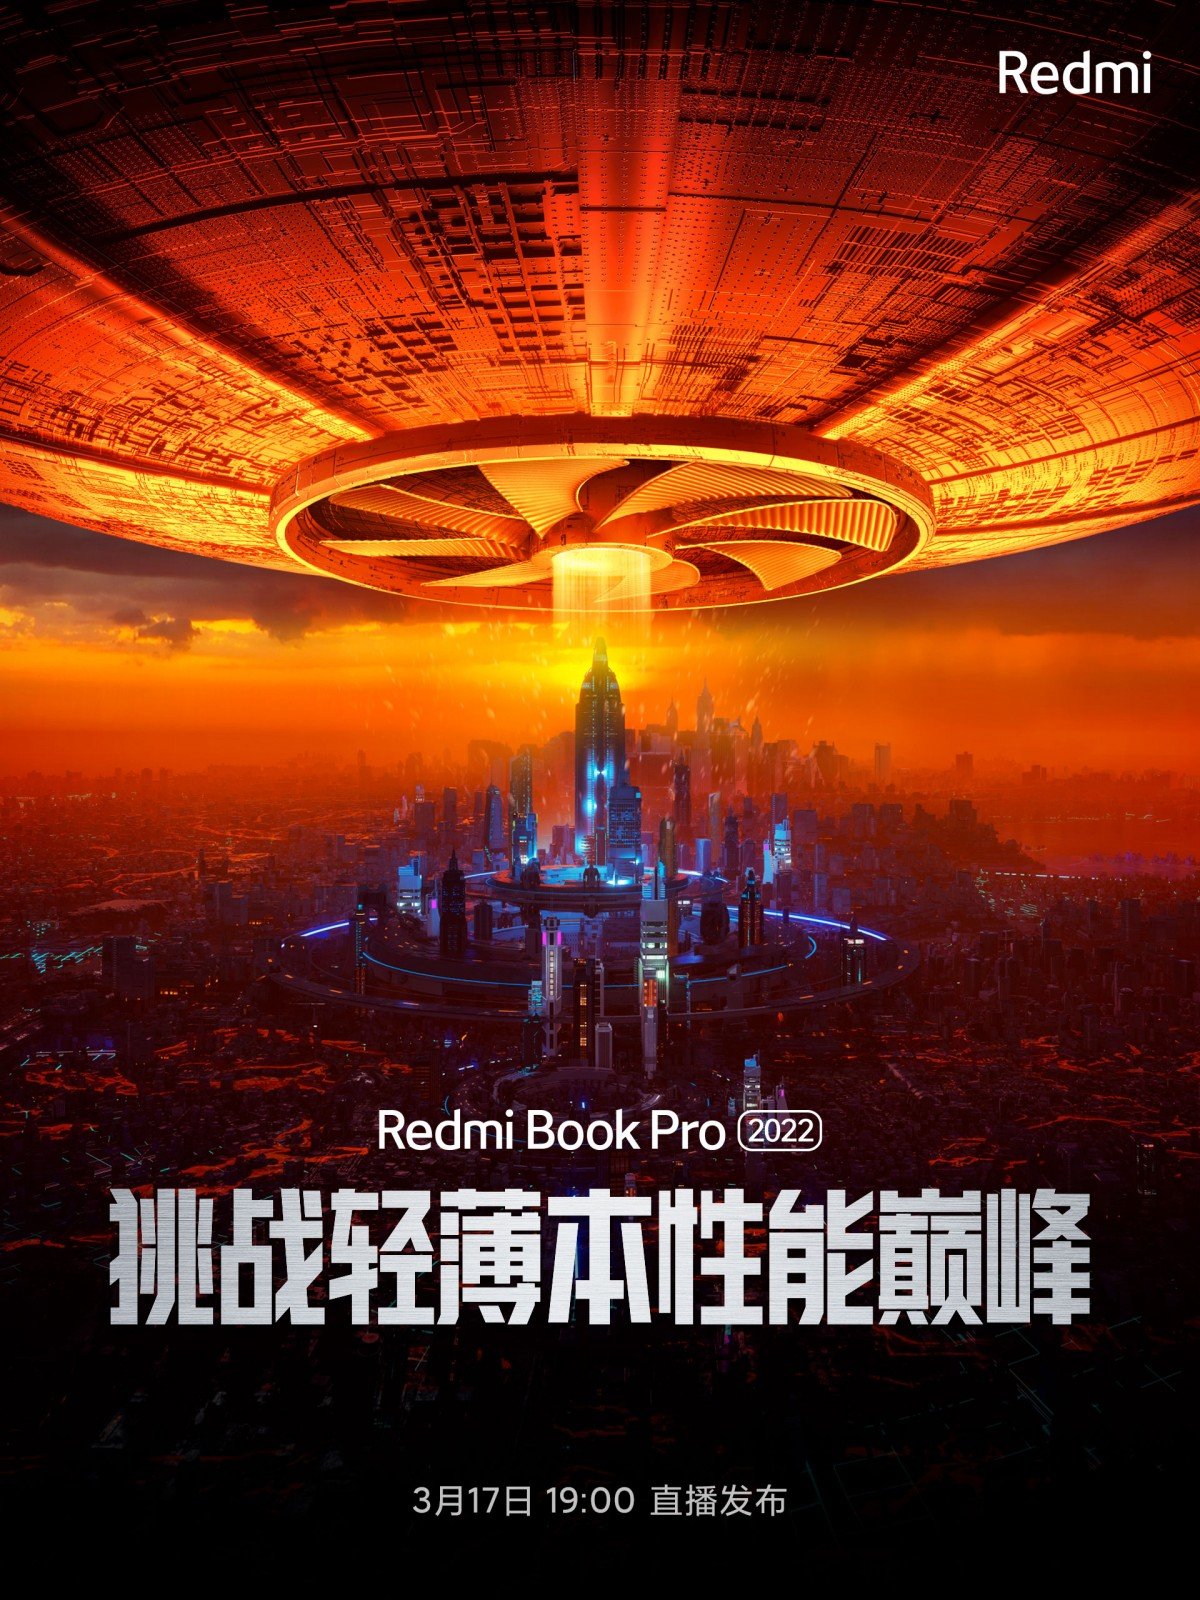 Xiaomi เตรียมเปิดตัว RedmiBook Pro 2022 ในวันที่ 17 มีค นี้  ขุมพลัง Intel Core เจน 12